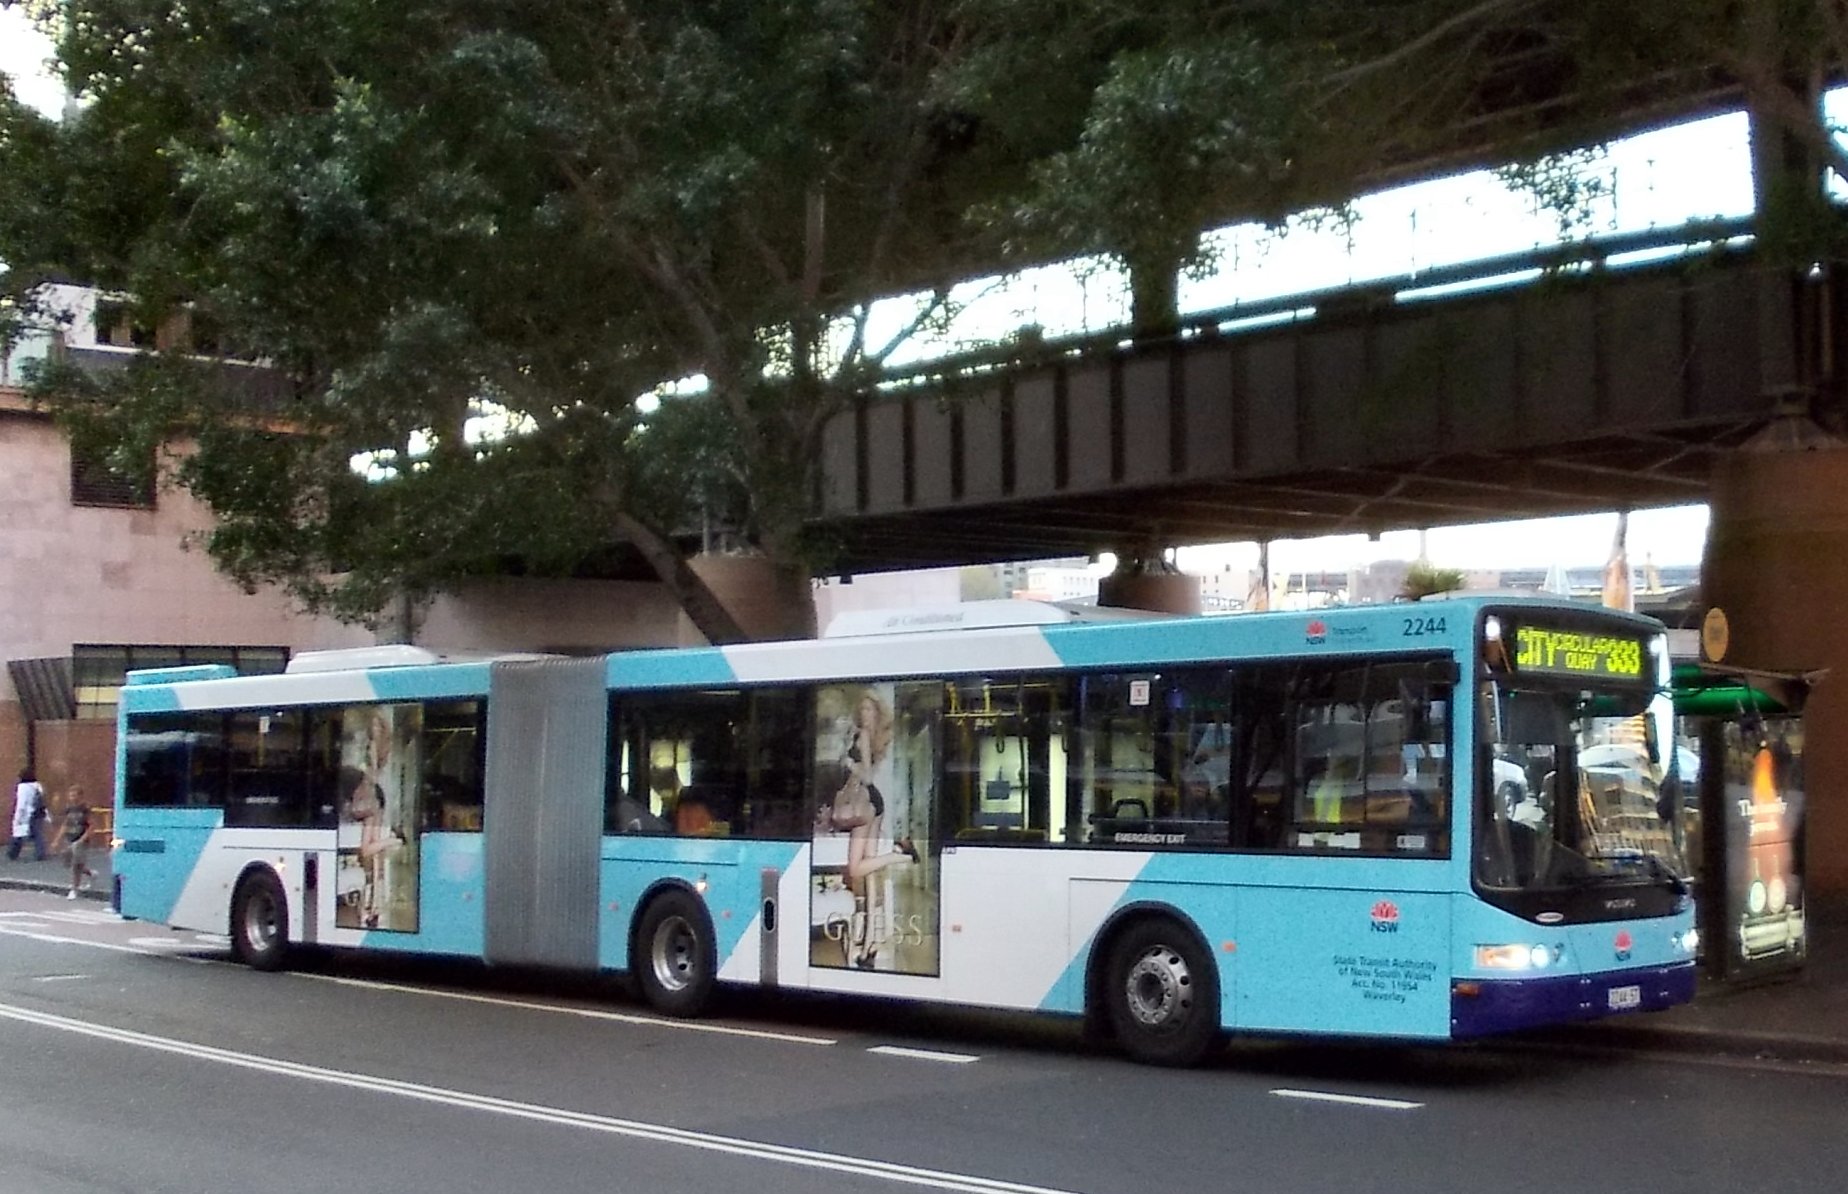 333 bus route sydney